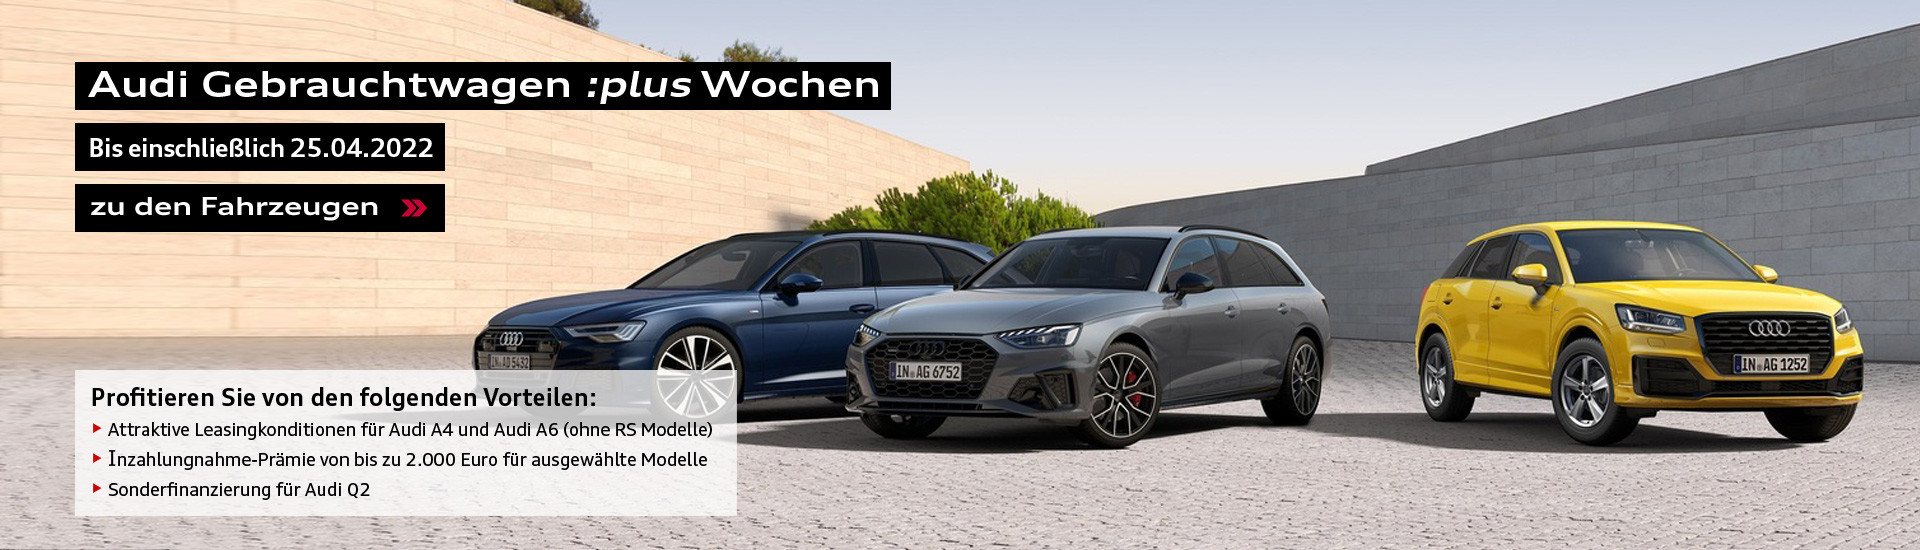 Slider-Audi-GW-Plus-Wochen.jpg